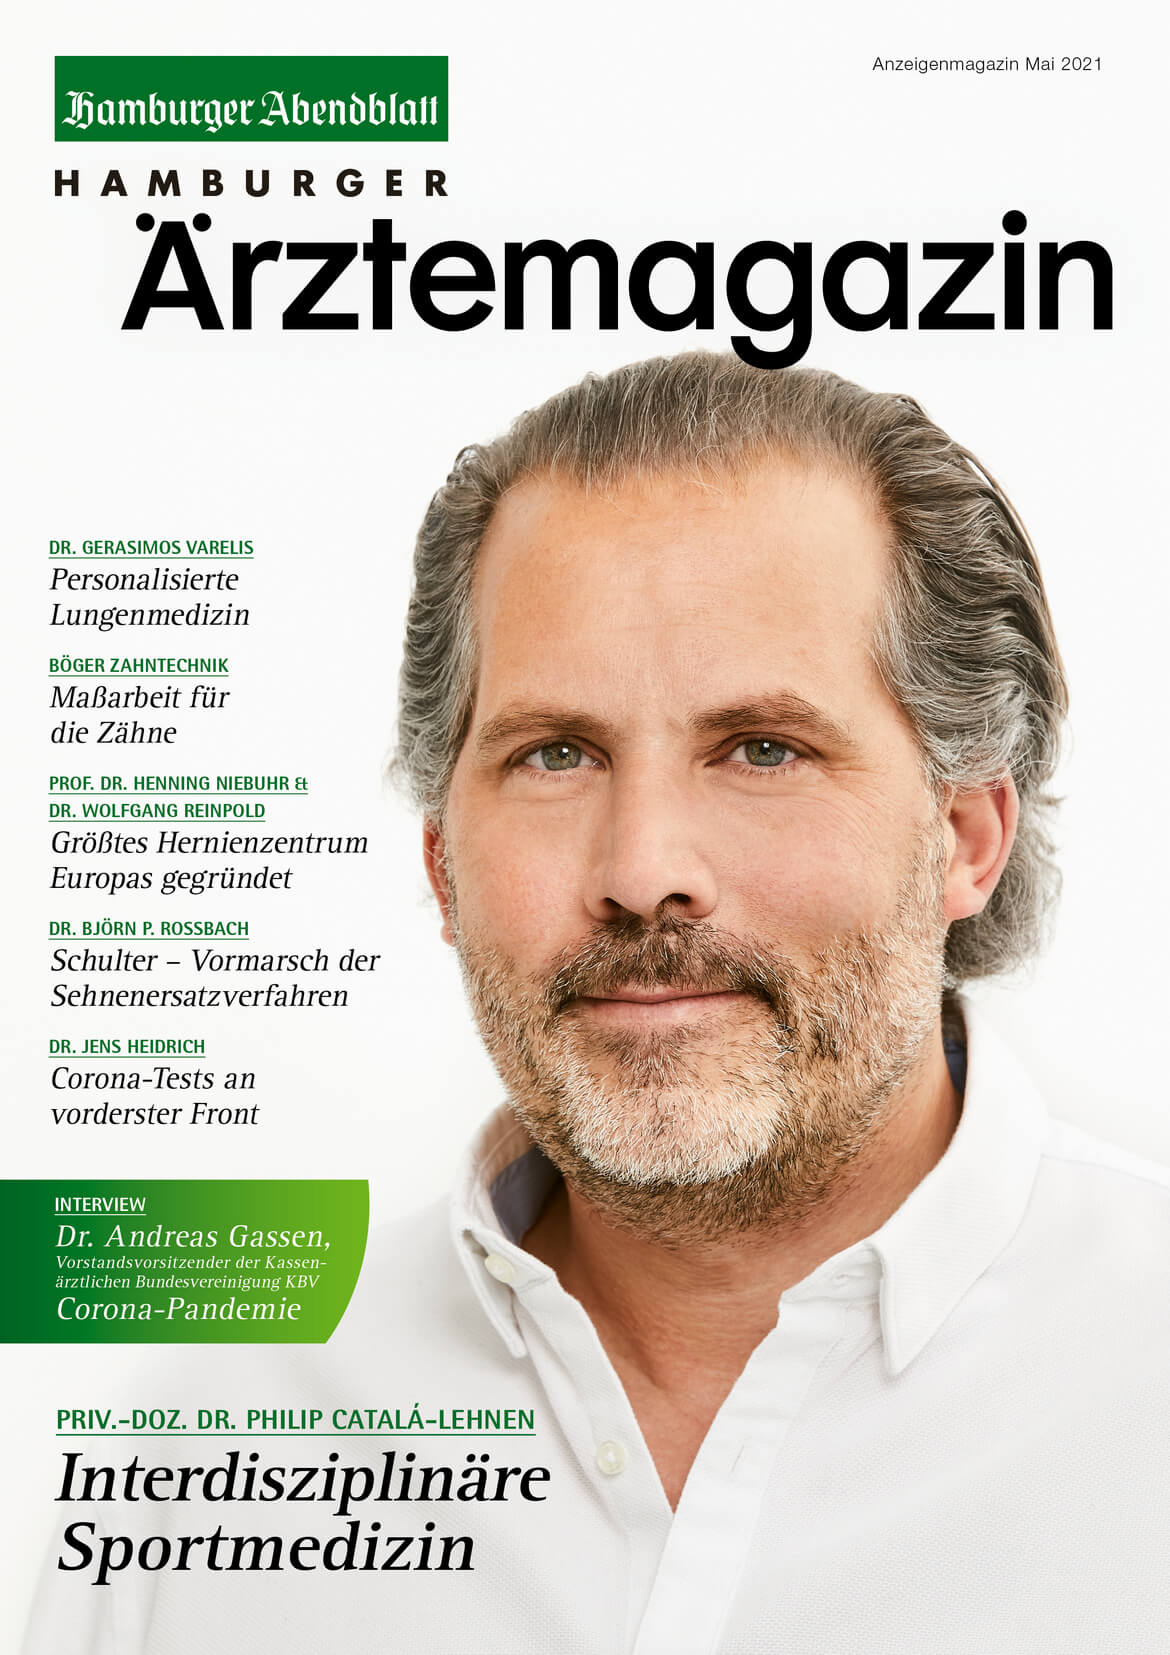 Hamburger Ärztemagazin Ausgabe Mai 2021 erschienen